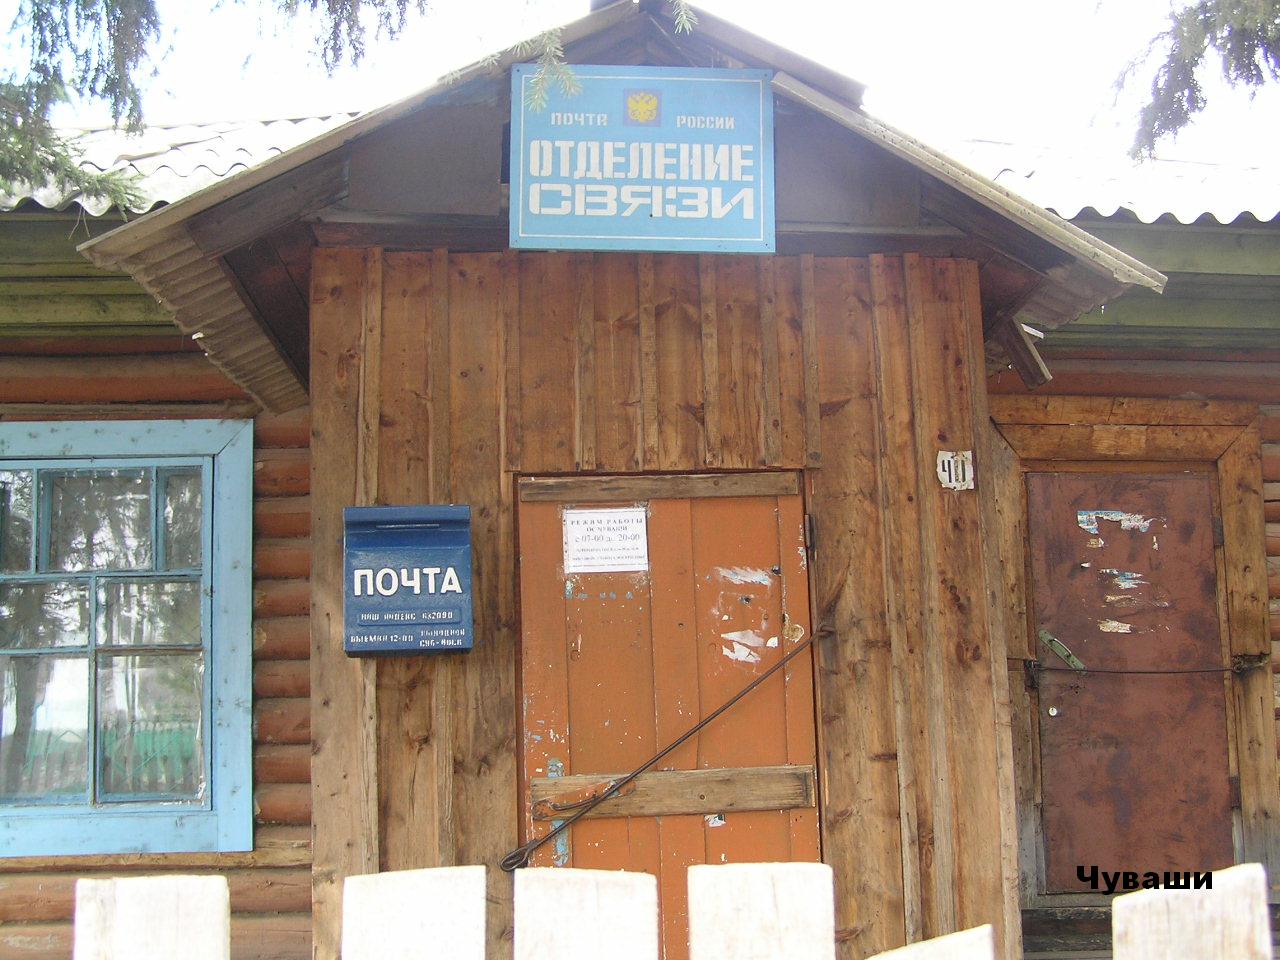 ВХОД, отделение почтовой связи 632090, Новосибирская обл., Северный р-он, Чуваши